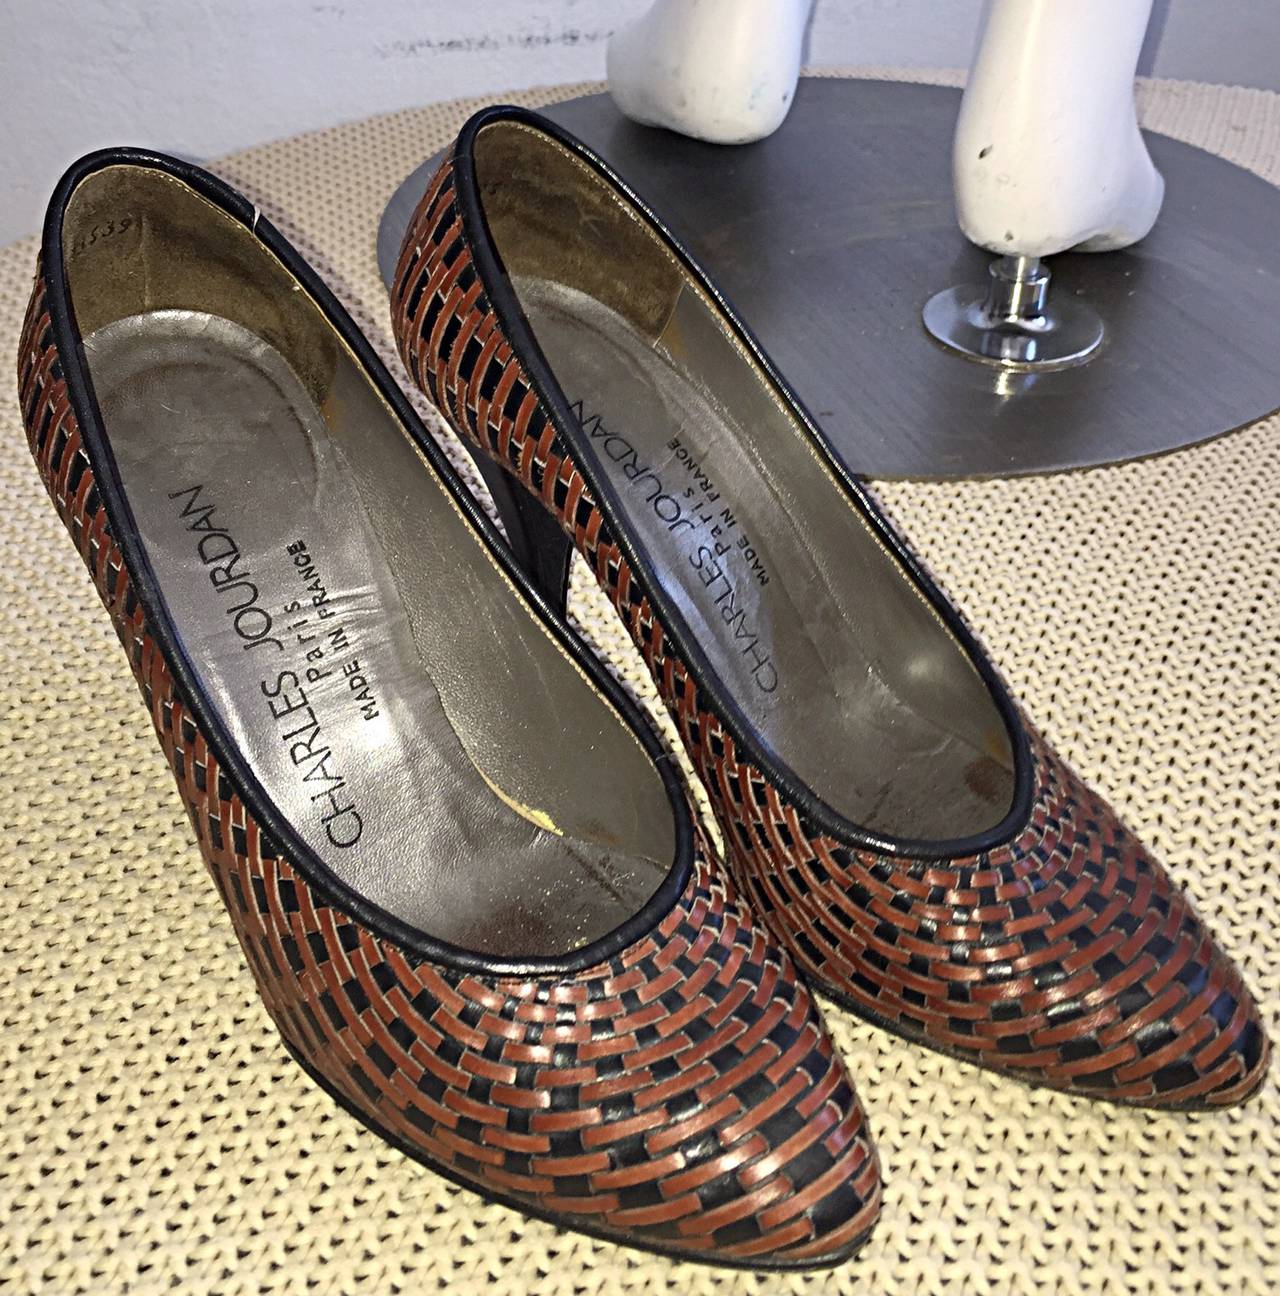 size 5 brown heels